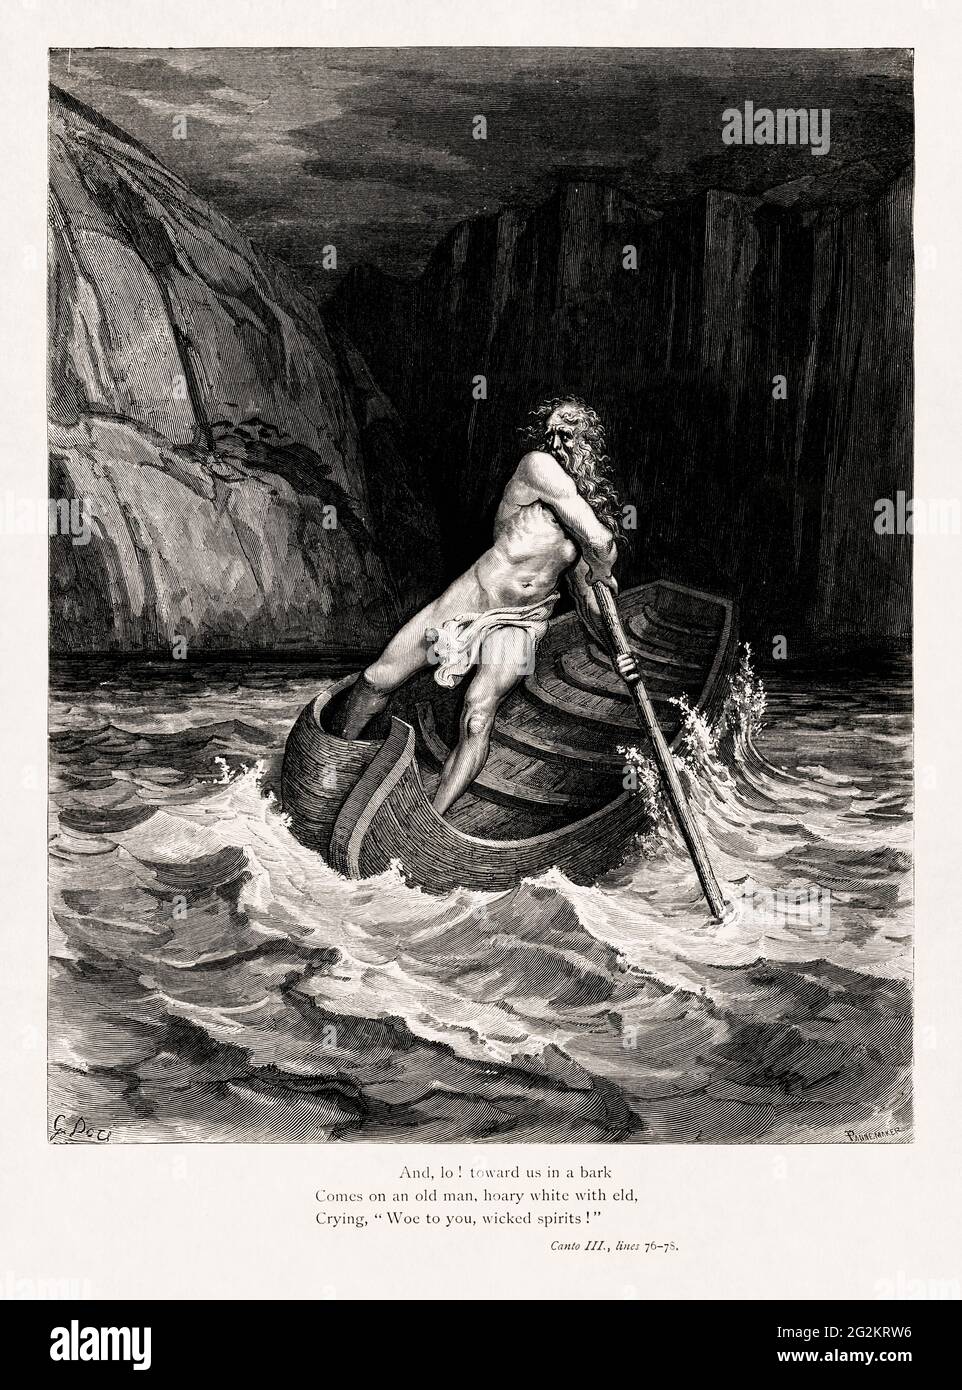 Disegno dell'arrivo di Charon realizzato nel 1857 da Gustave Doré per illustrare una nuova edizione delle poesie epiche di Dante Alighieri originariamente pubblicate in Foto Stock